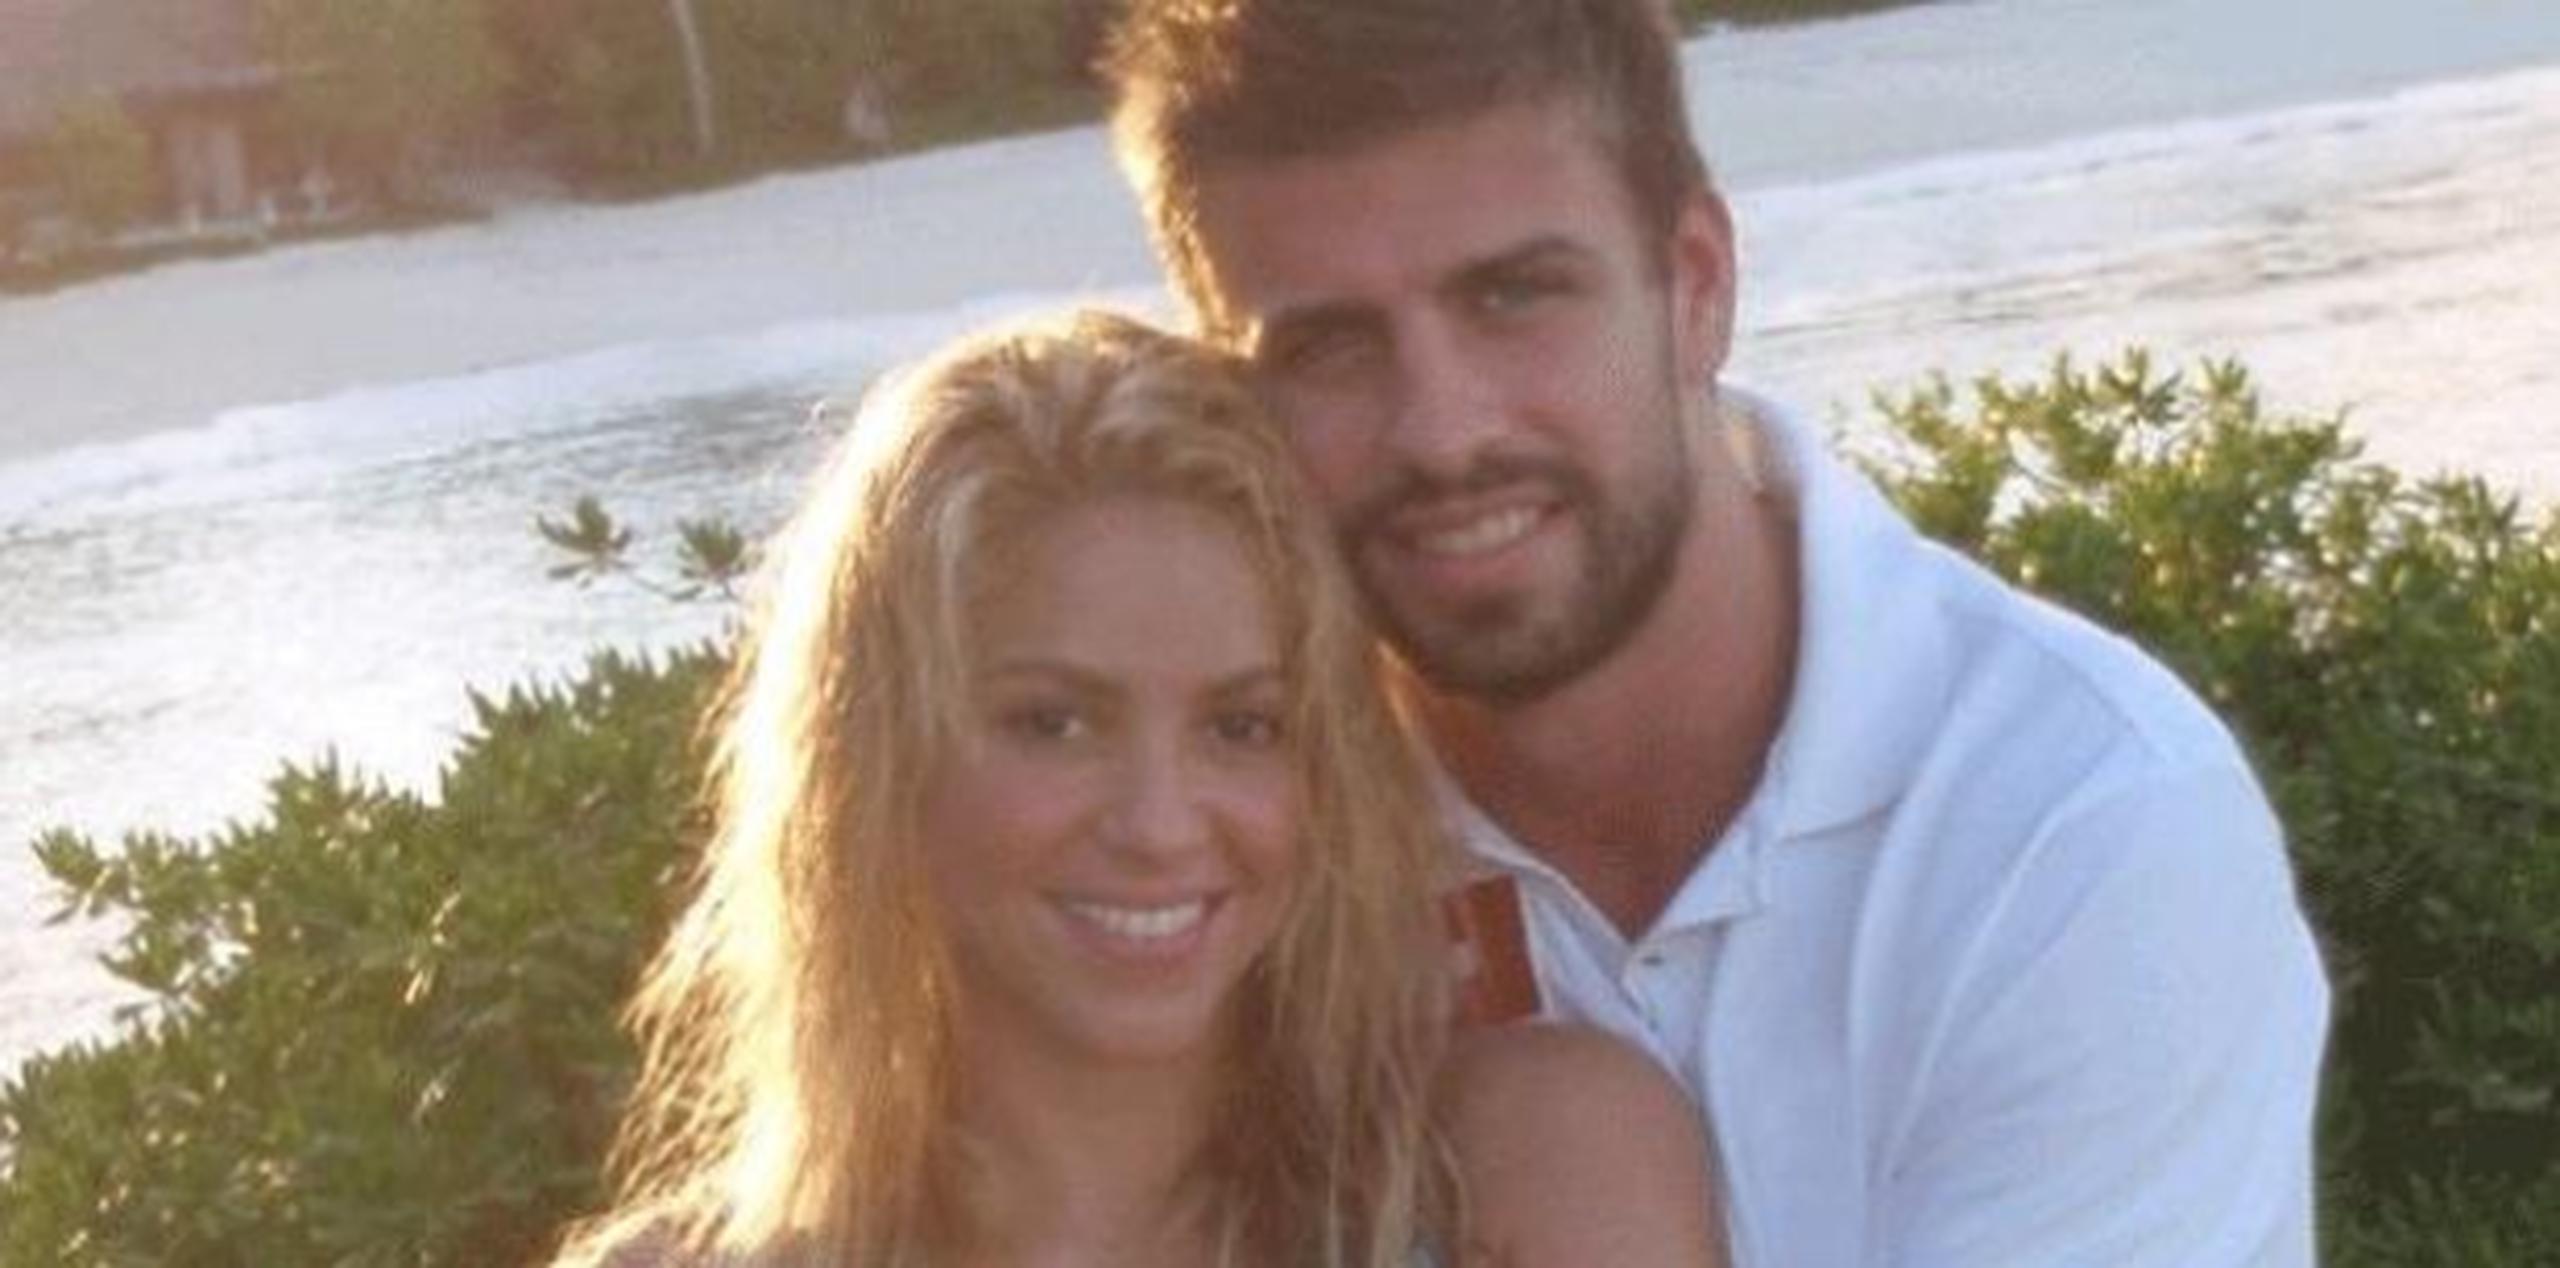 Shakira y el futbolista Gerard Piqué participan del vídeo en el que el menor de los hijos de la pareja patea una bola. (Archivo)